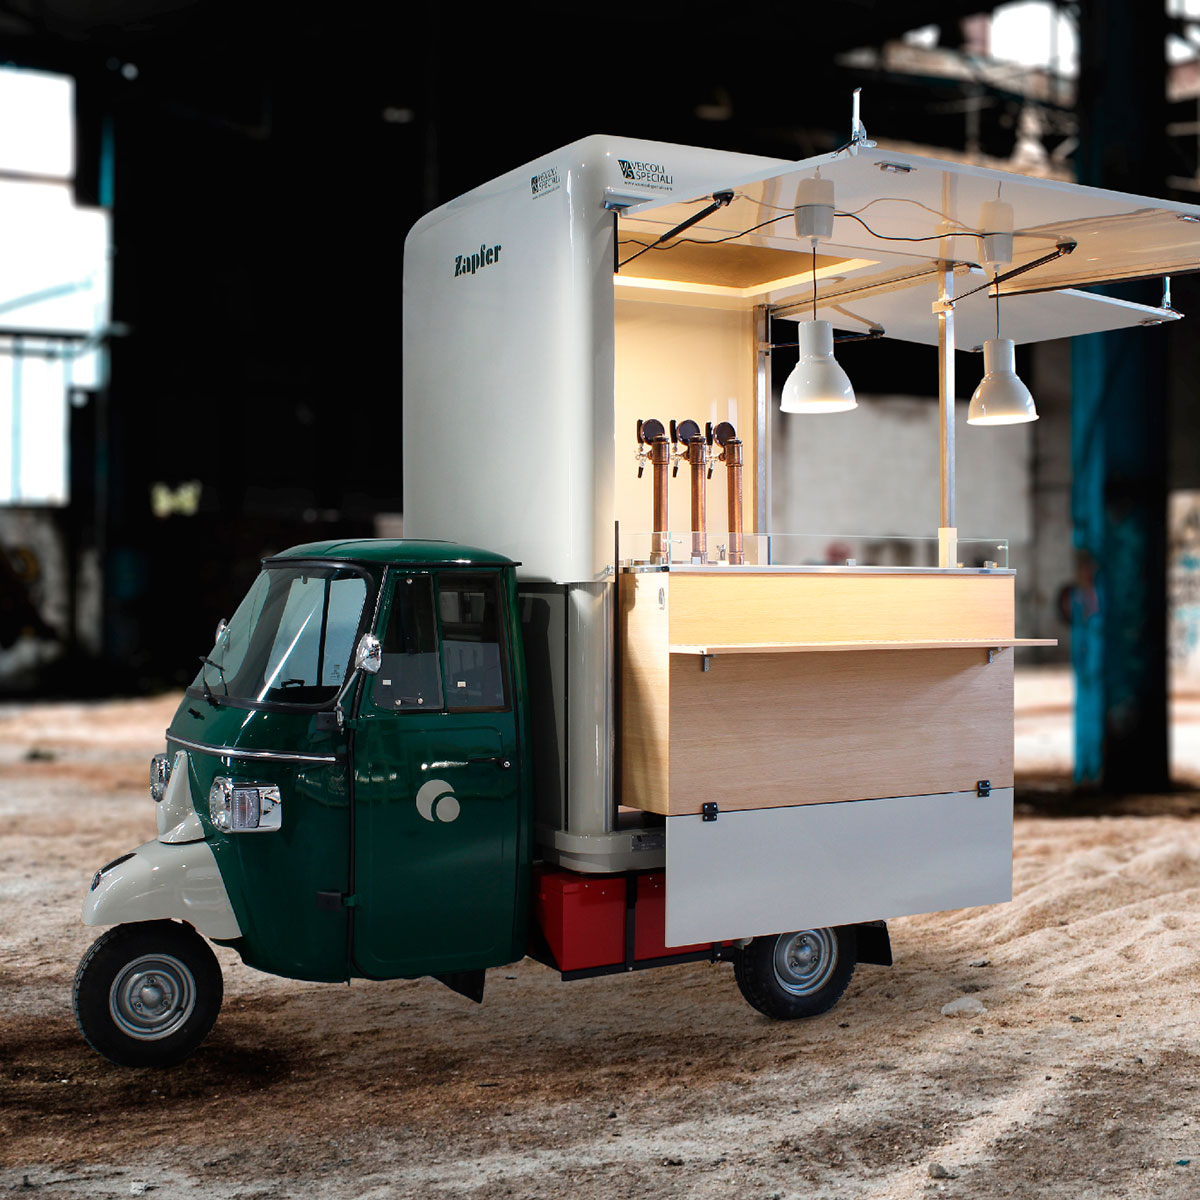 costo food truck bierwagen brauerei zapfer elektro riflette la qualità dell'allestimento VS